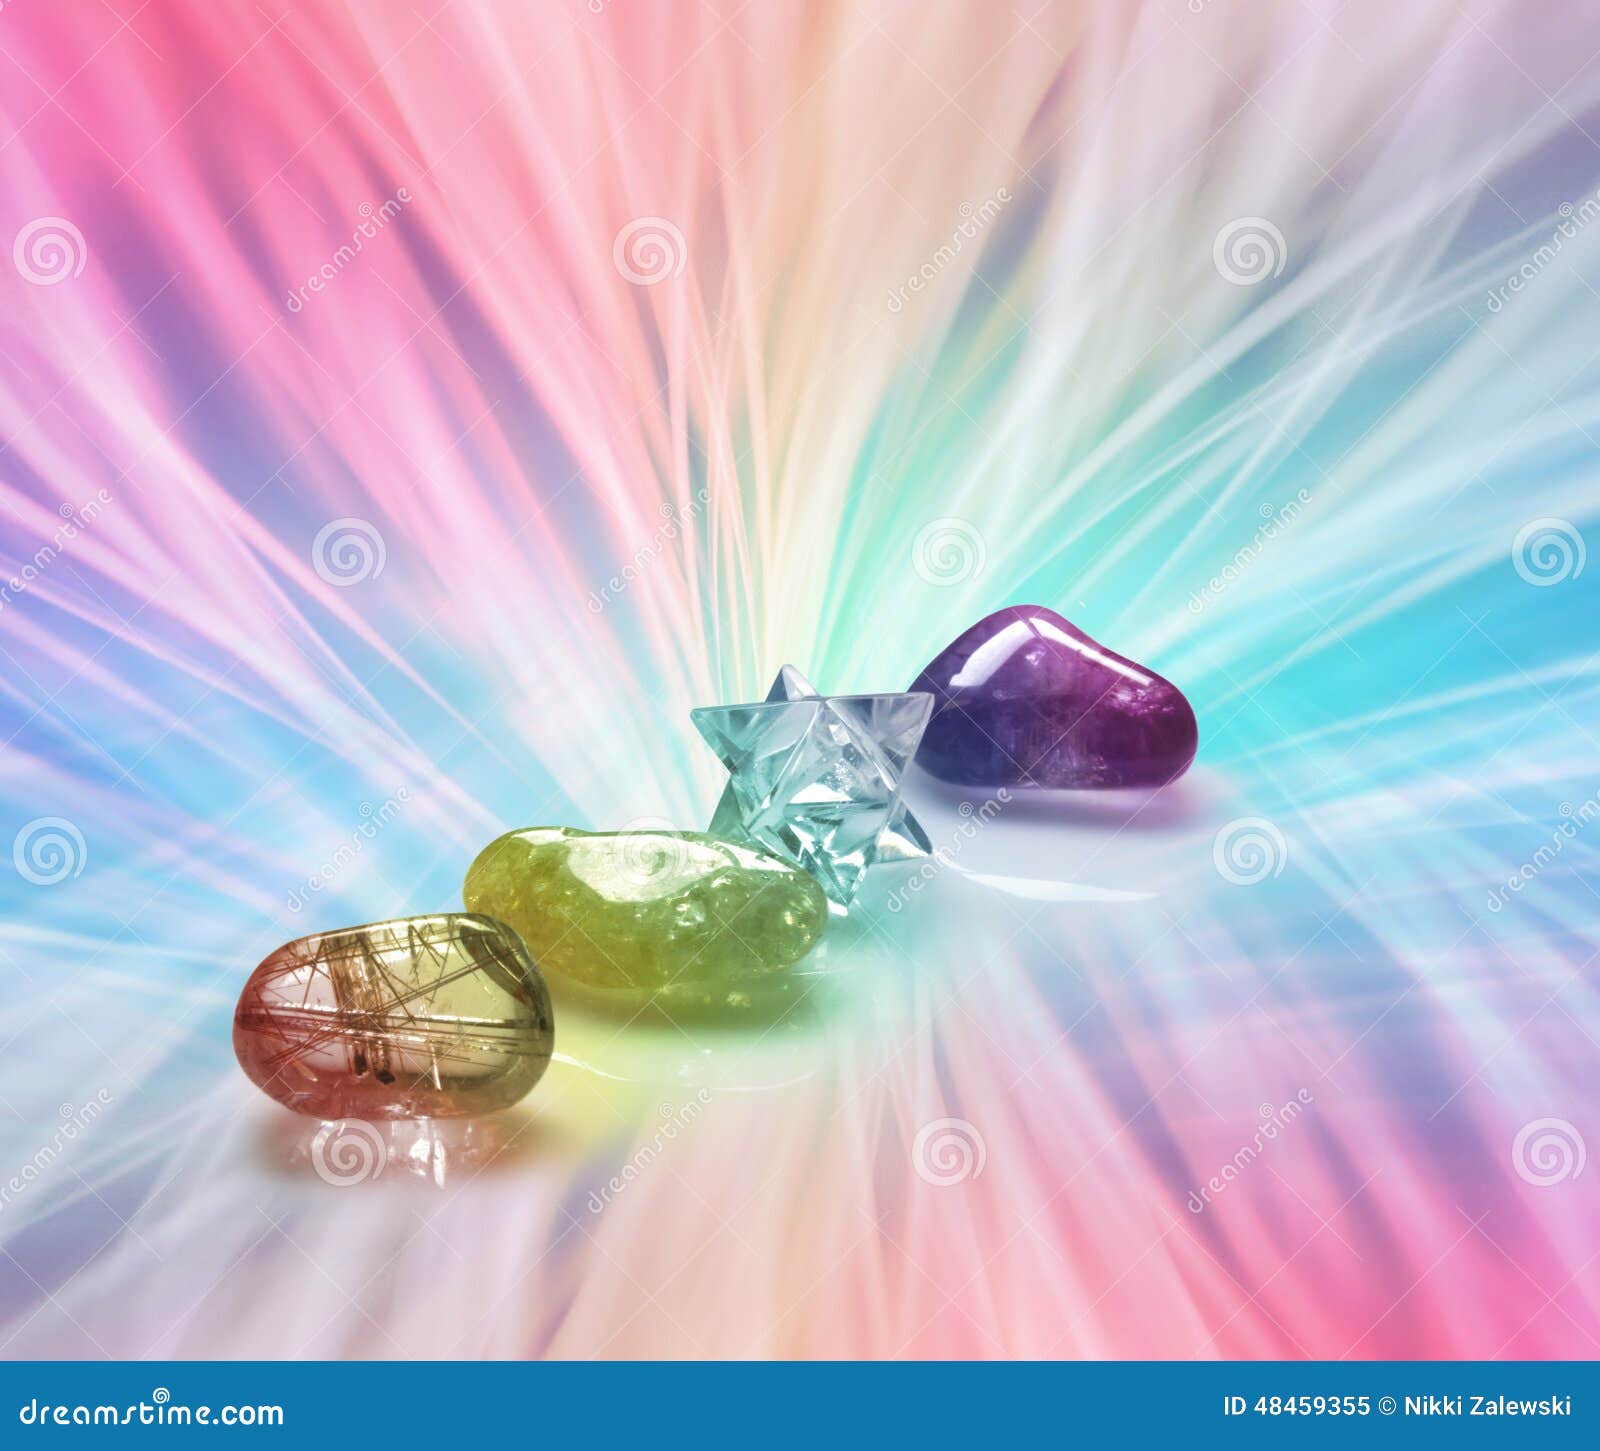 rainbow healing crystals